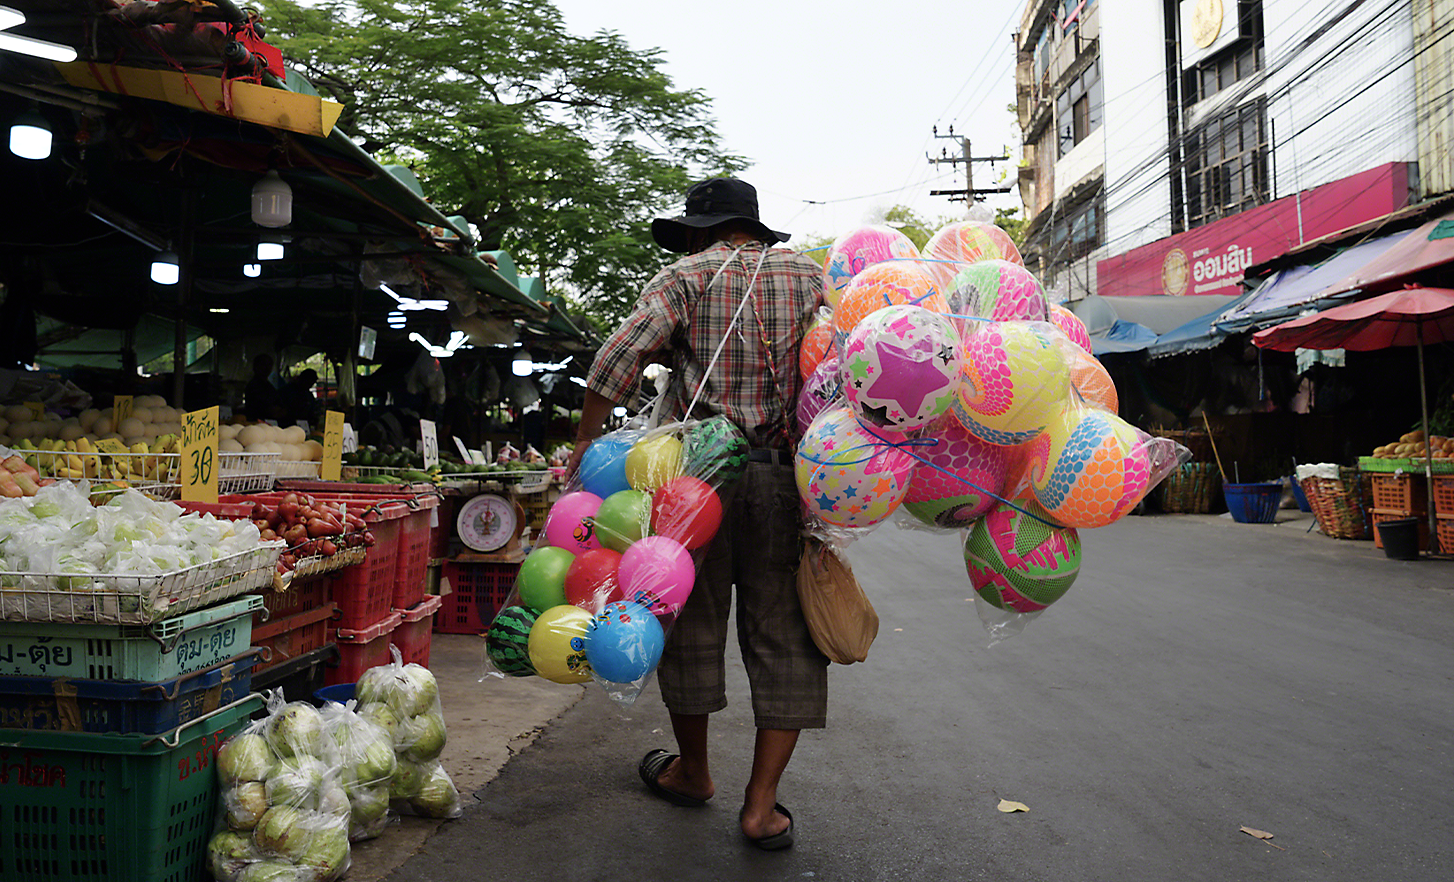 Pouličný predavač nesúci veľké tašky s výrazne farebnými plastovými loptičkami